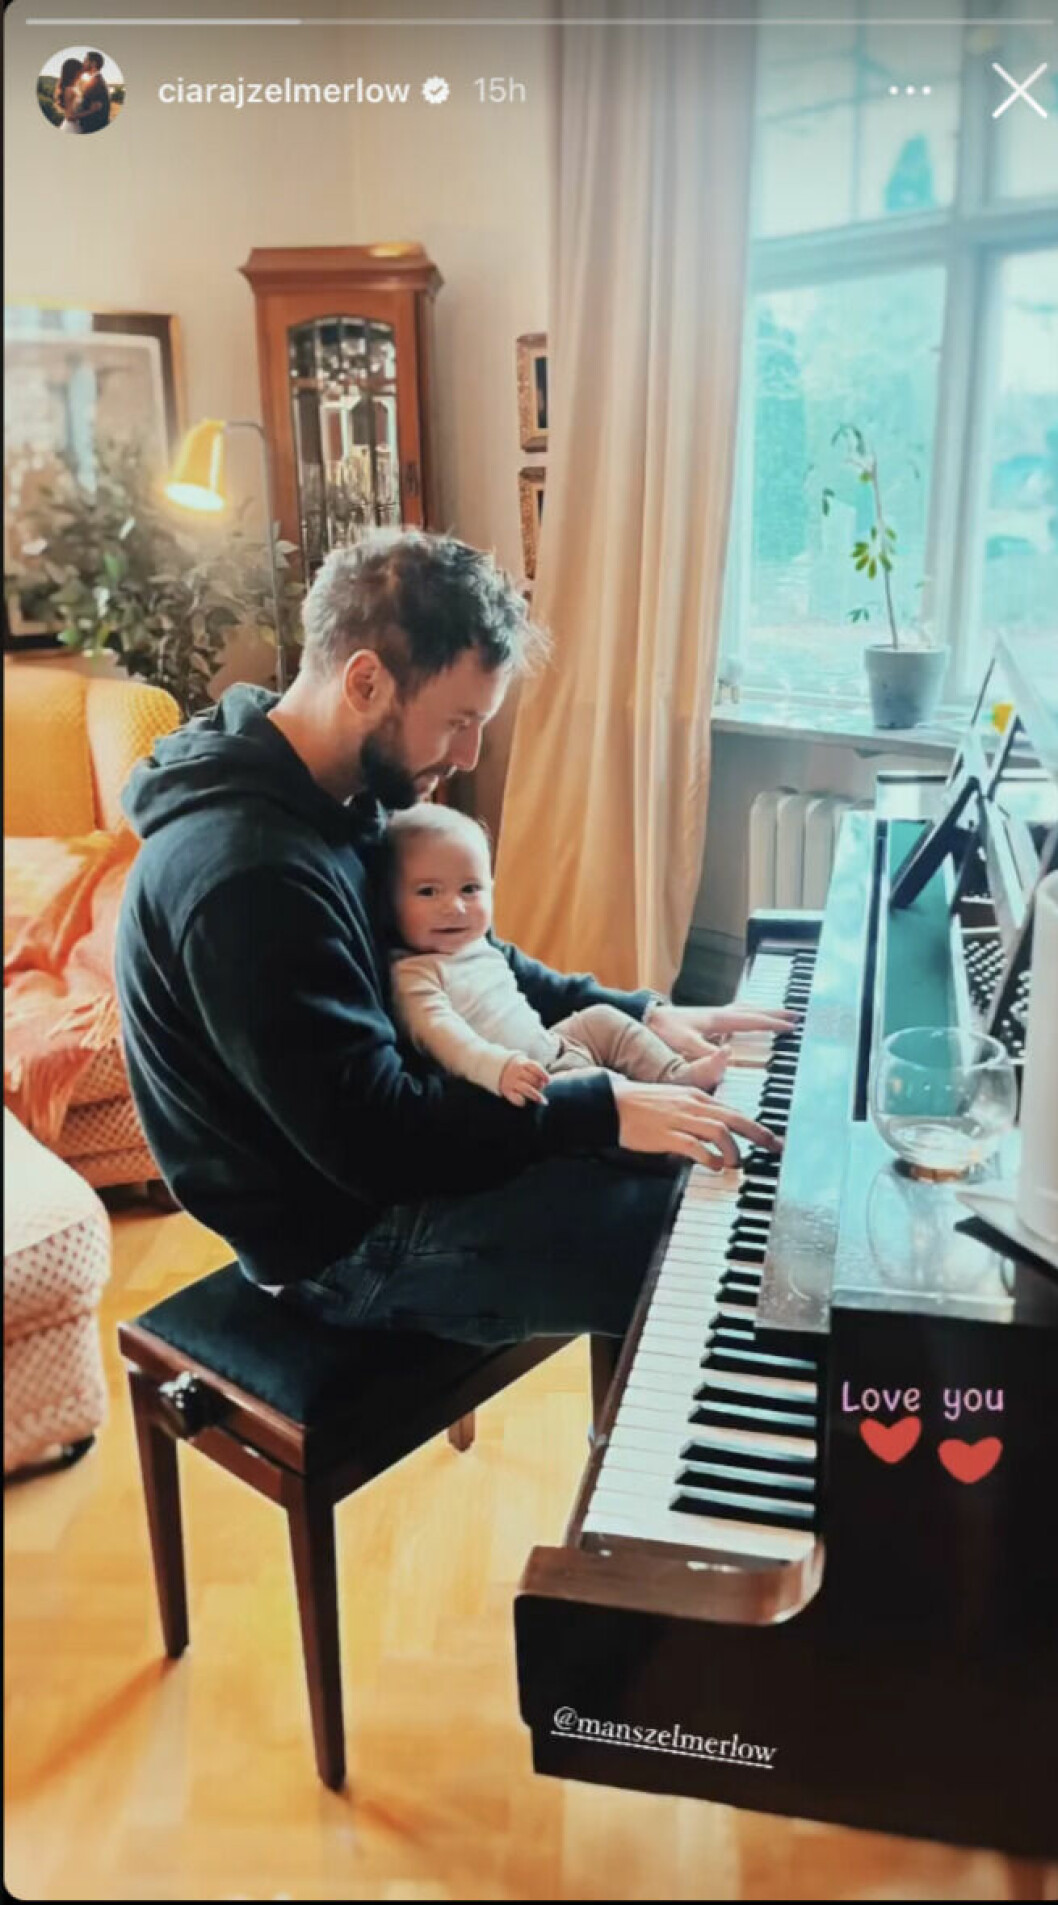 En bild från Ciara Zelmerlöws Instagram på Måns Zelmerlöw med sonen Ossian i knät framför ett piano